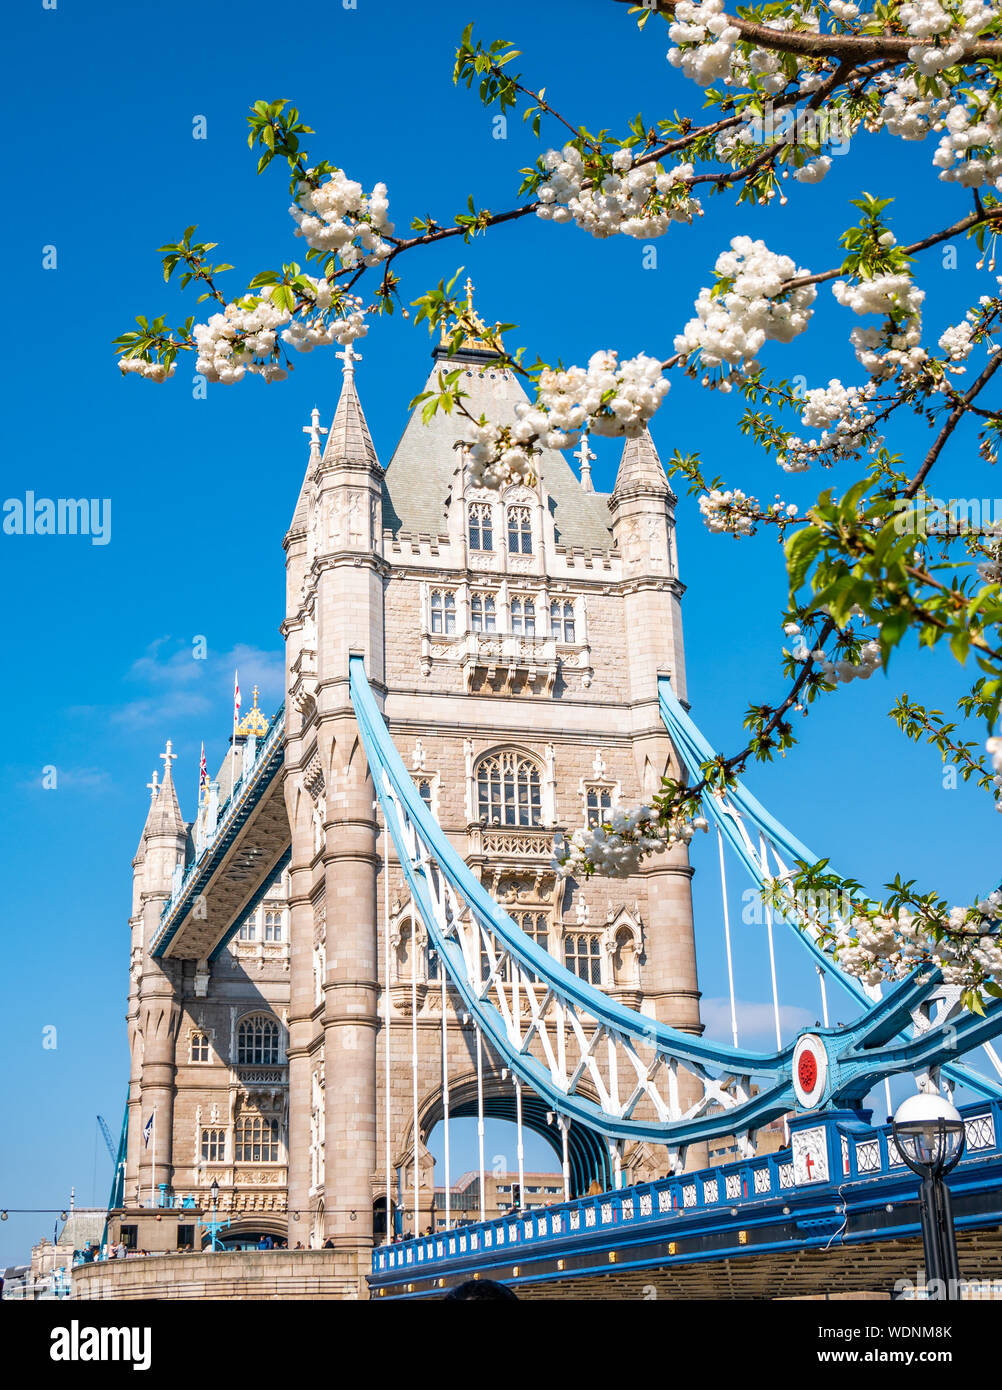 Famosos de Londres, Tower Bridge, en la temporada de primavera con blancas flores del manzano en composición - Inglaterra, Reino Unido Foto de stock